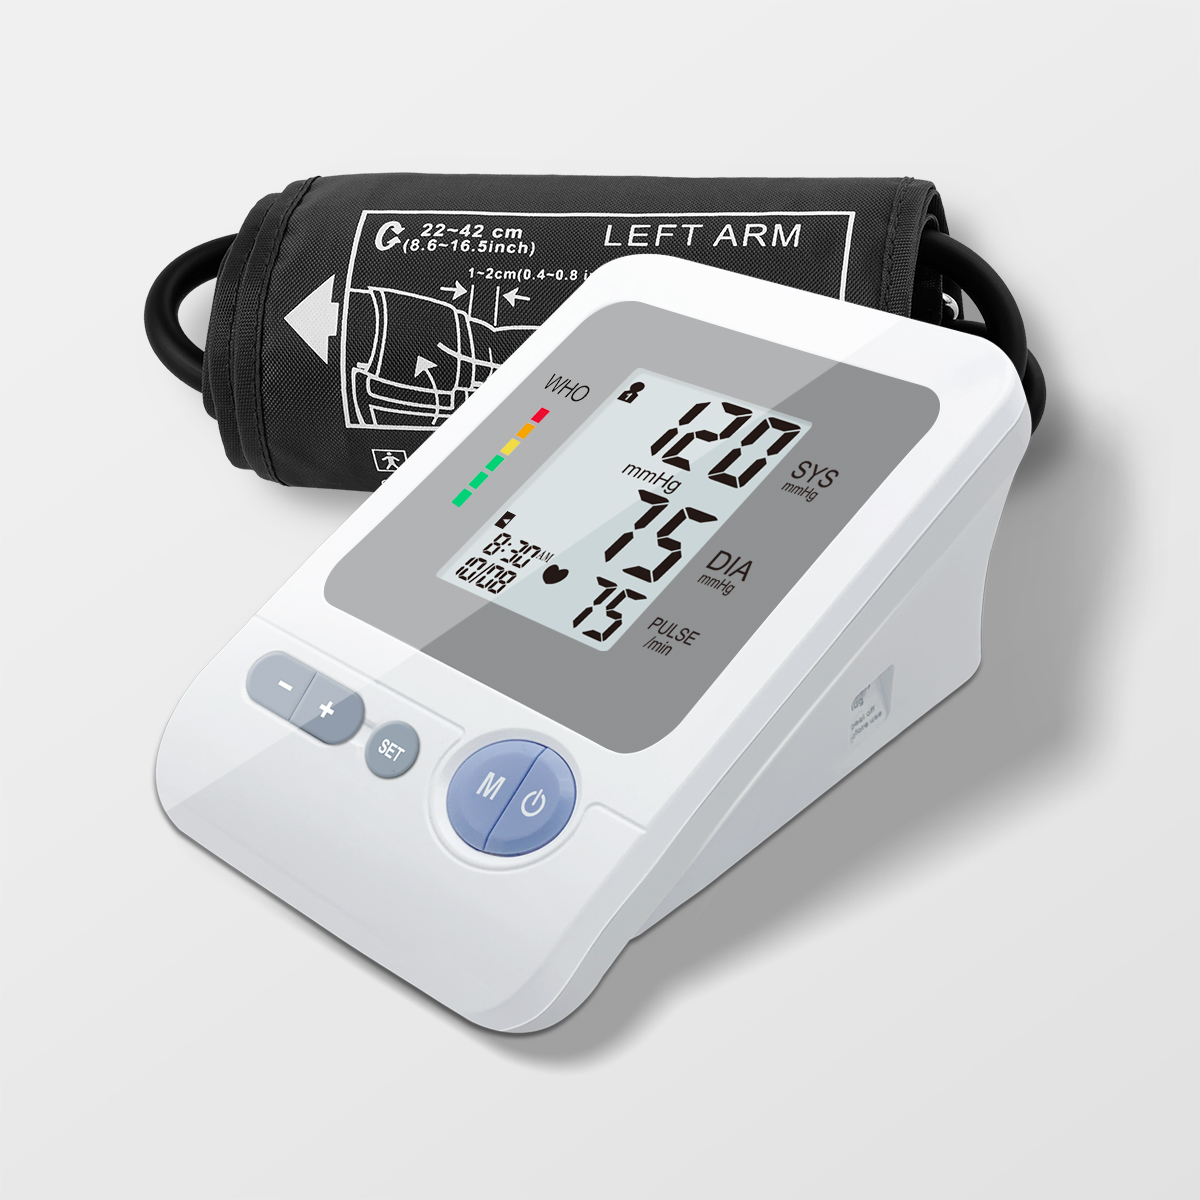 MDR CE BP Monitor electrònic de pressió arterial del braç superior Tensiometro mèdic